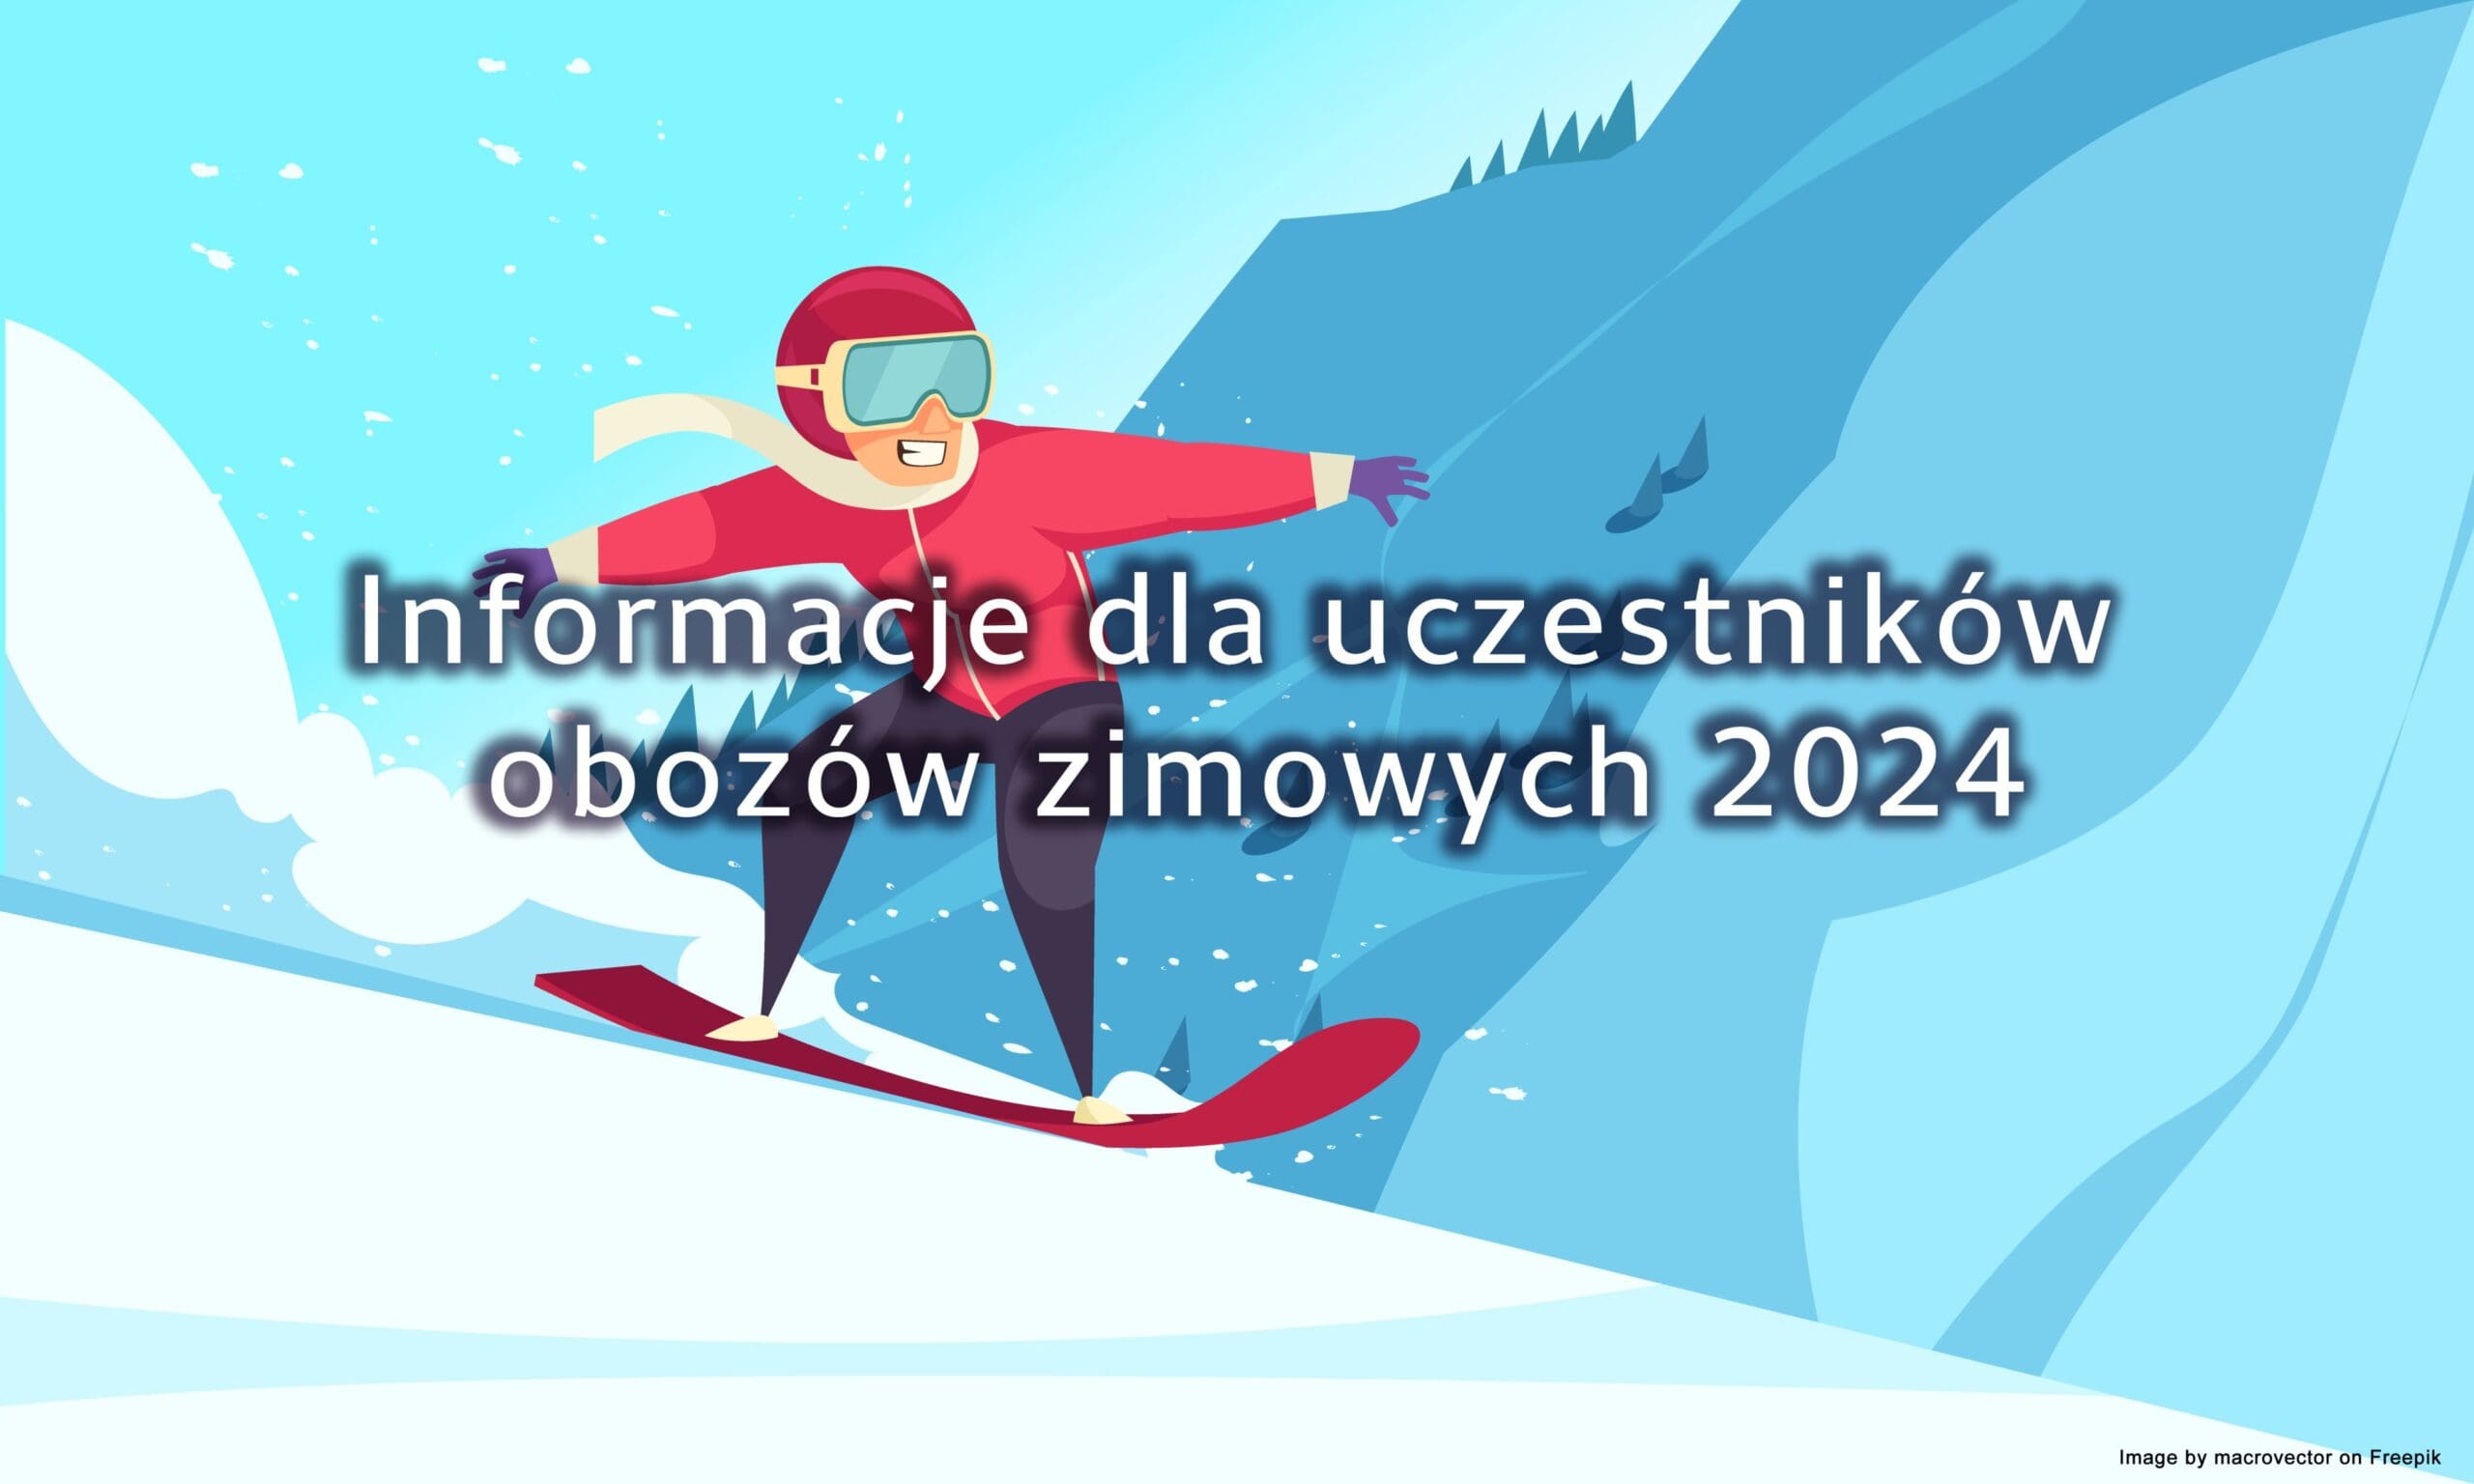 Zdjęcie w tle informacje dla uczestników obozów zimowych w 2024 roku